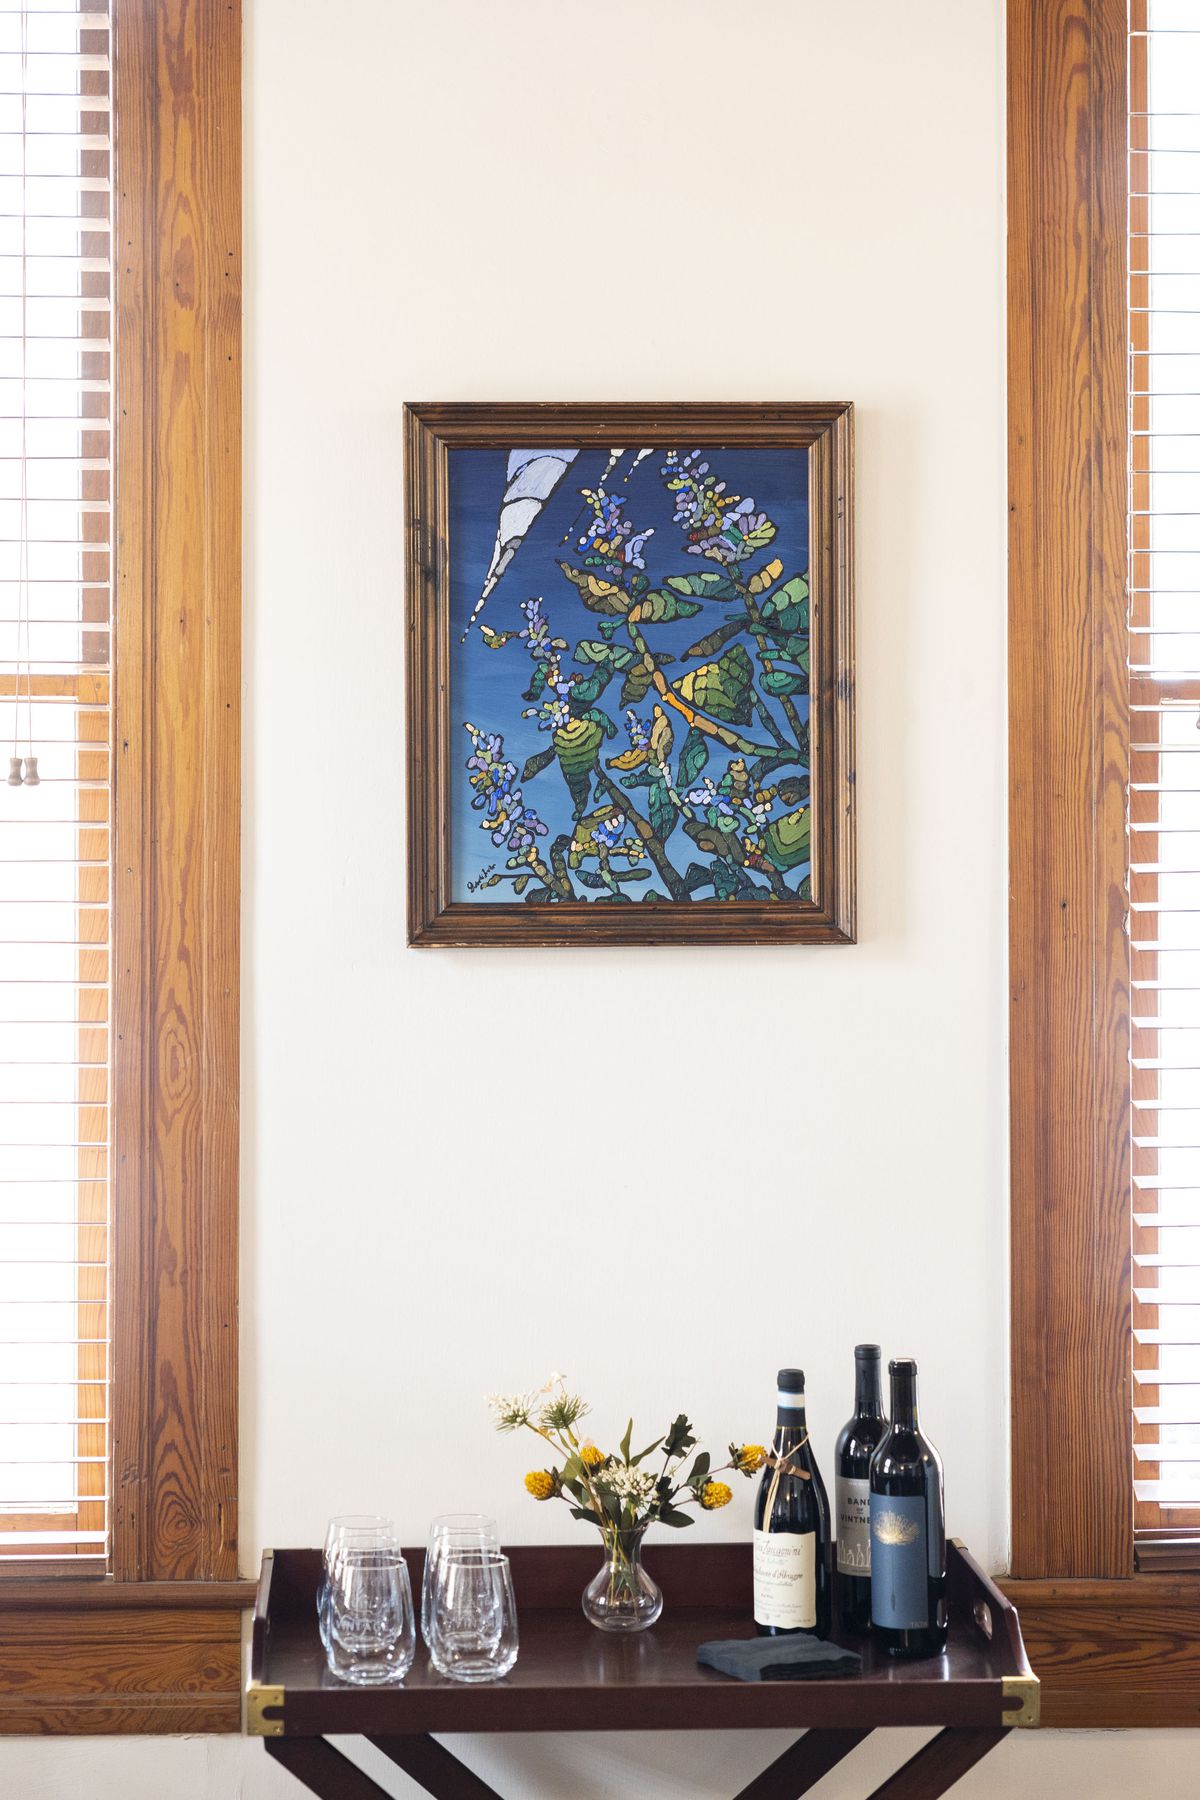 Un mur avec un tableau et une table de verres à vin sans pied et de bouteilles de vin.